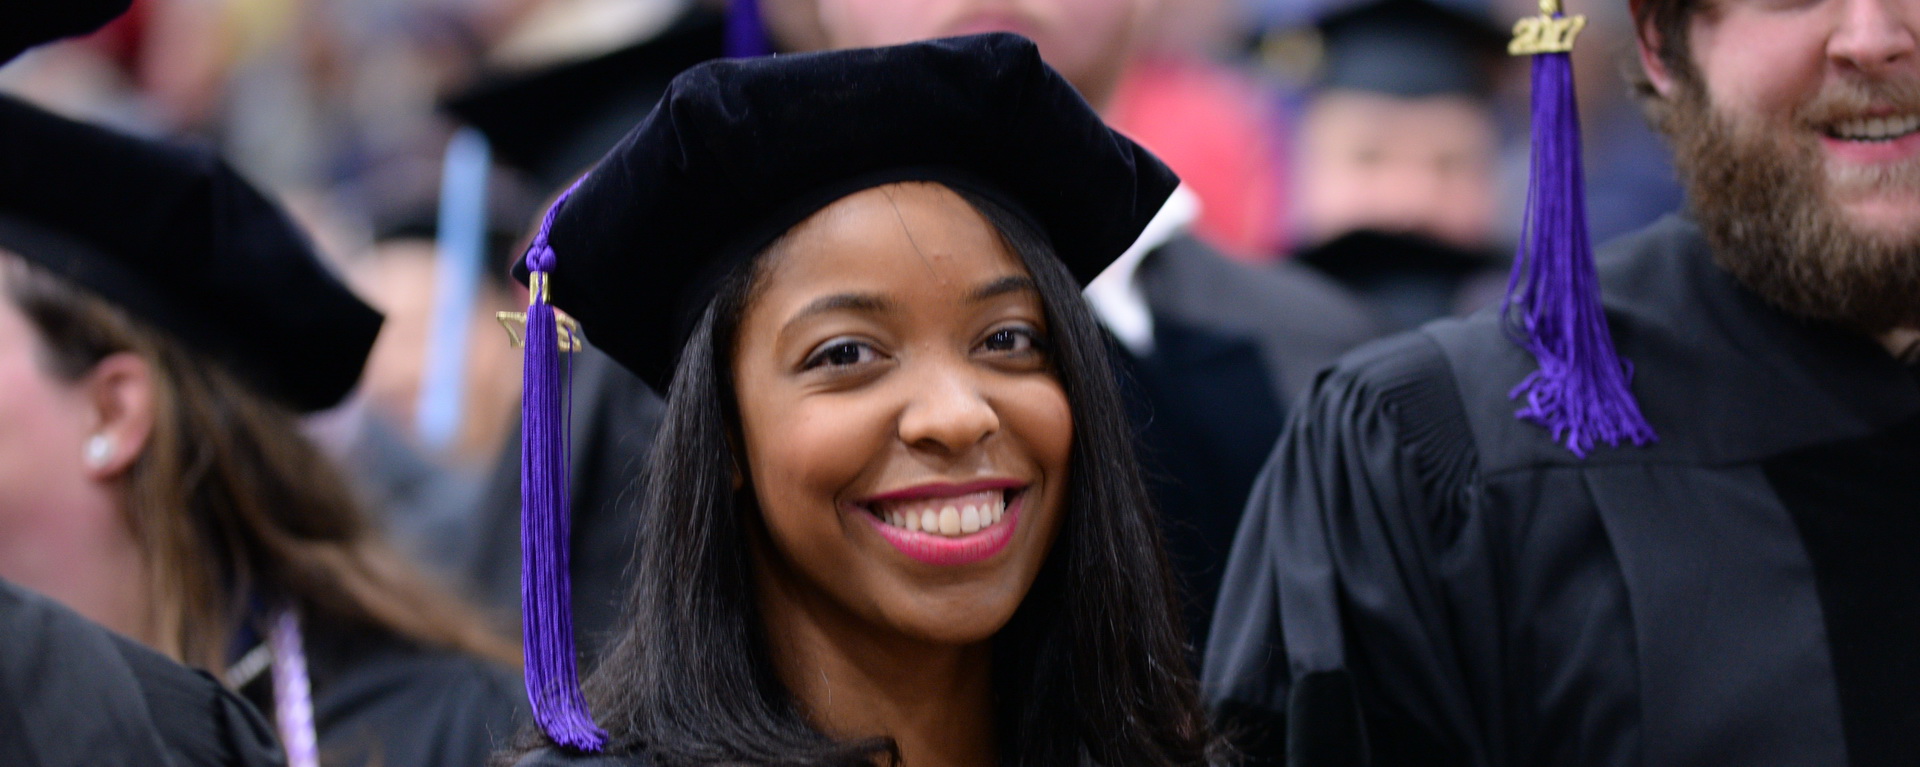 Black female student smiling in graduation regalia